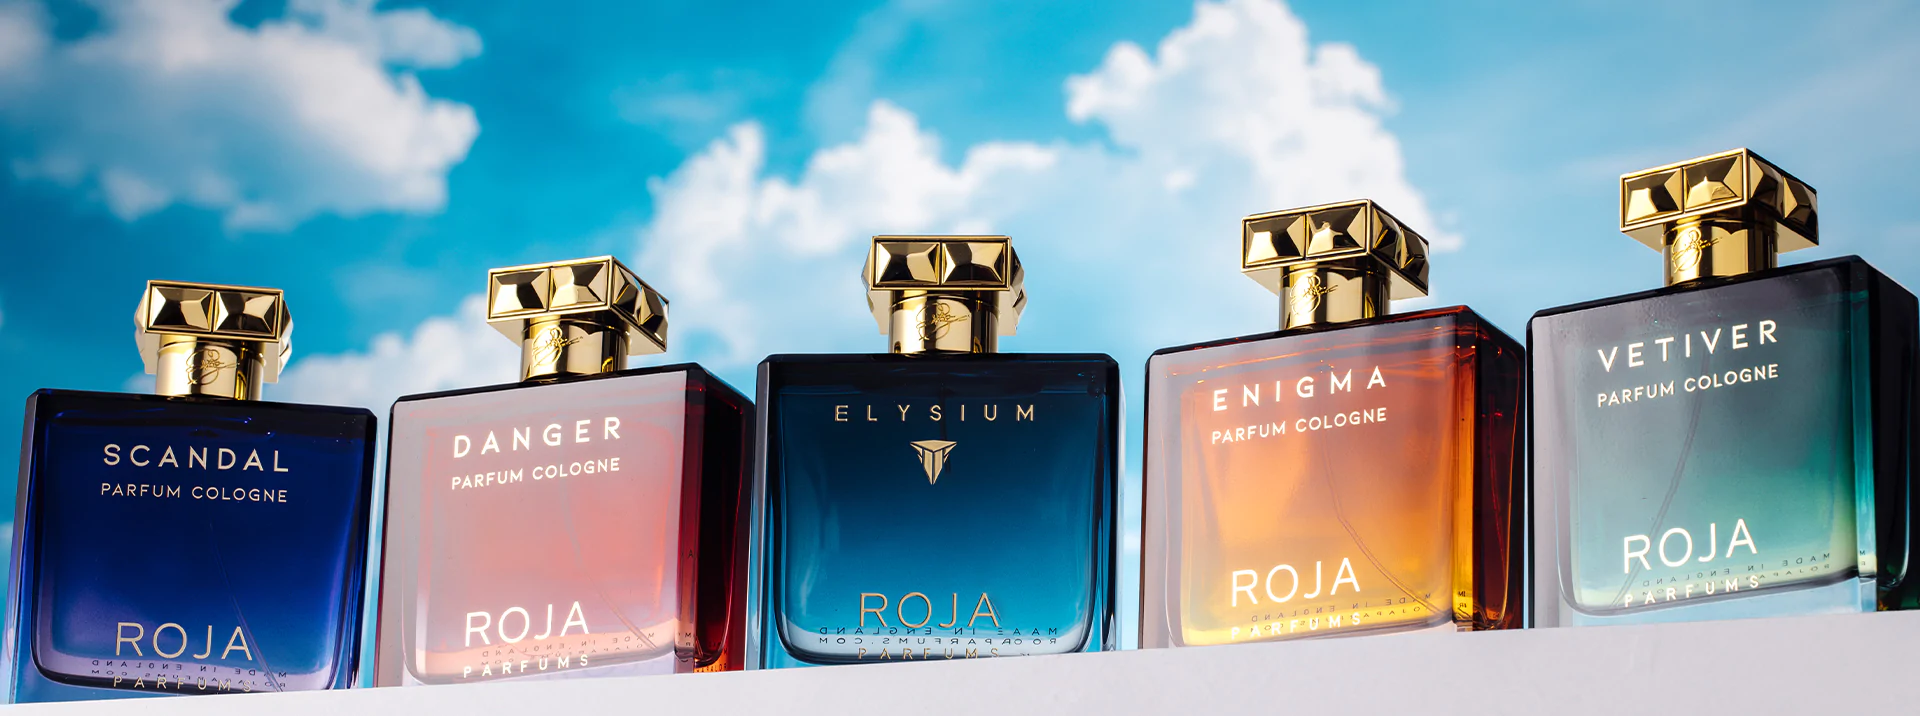 Enigma Pour Homme ROJA Parfums